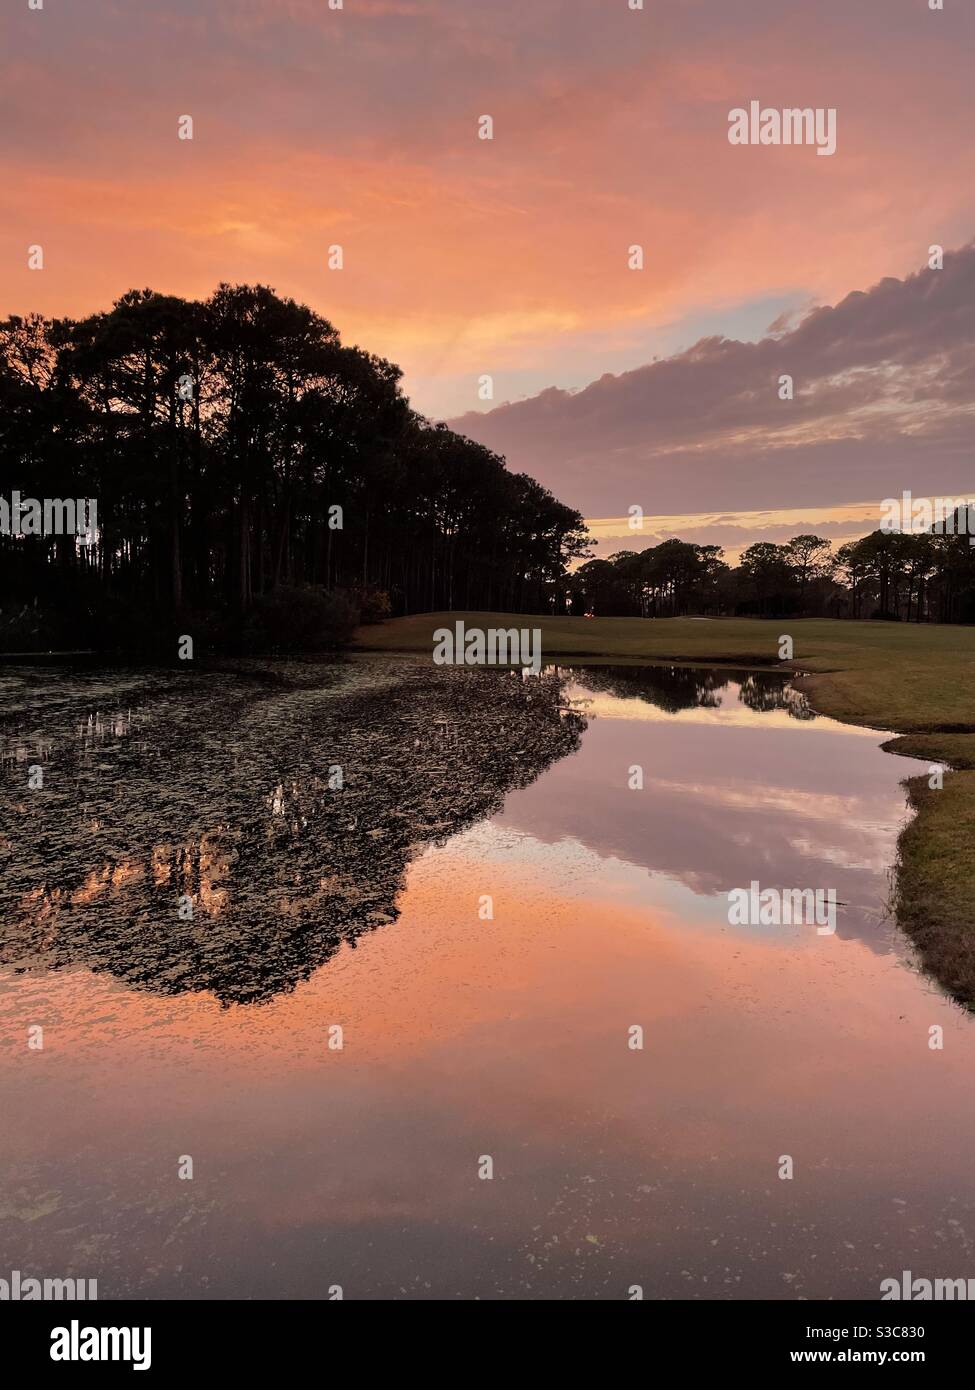 Farbenfrohe Sonnenuntergangshimmel, die sich auf einen Teich mit Wasser spiegeln Silhouettenbäume Stockfoto